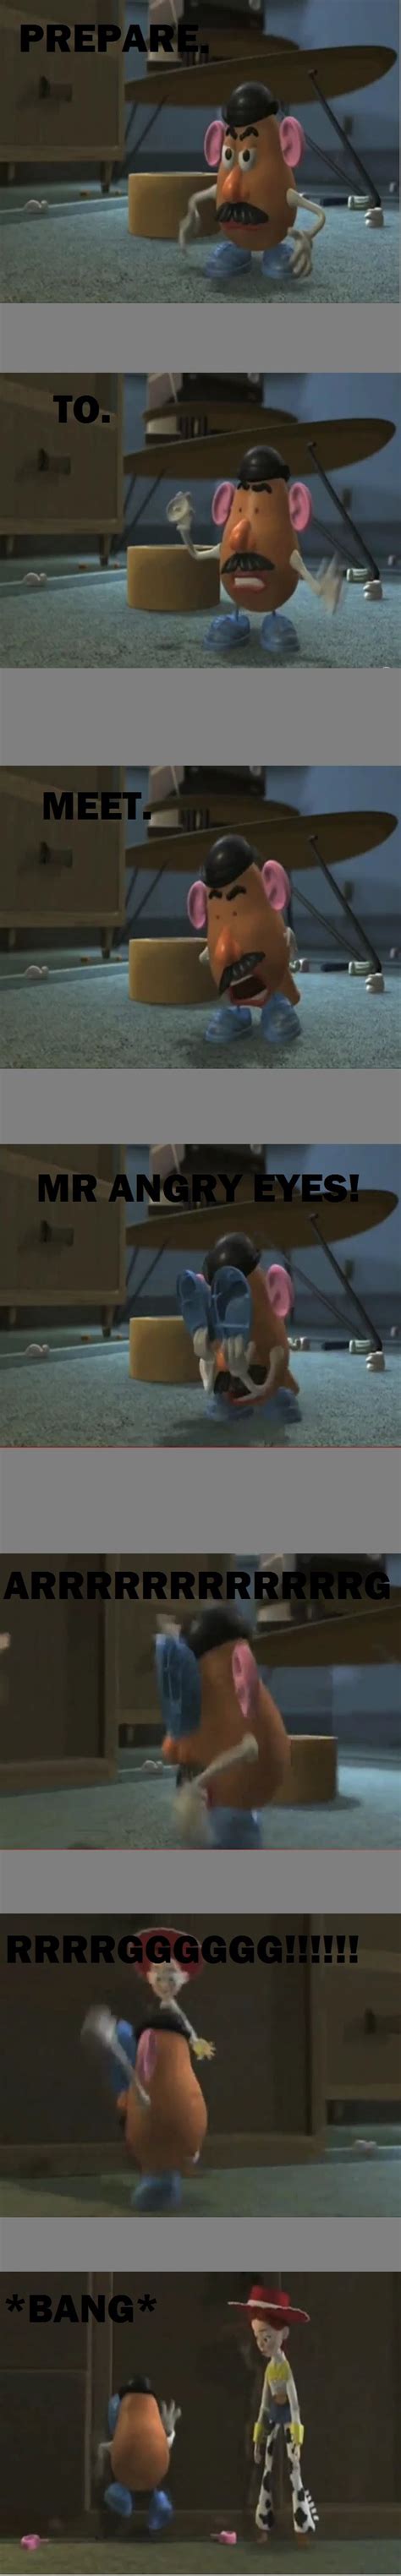 Prepare To Meet Mr Angry Eyes